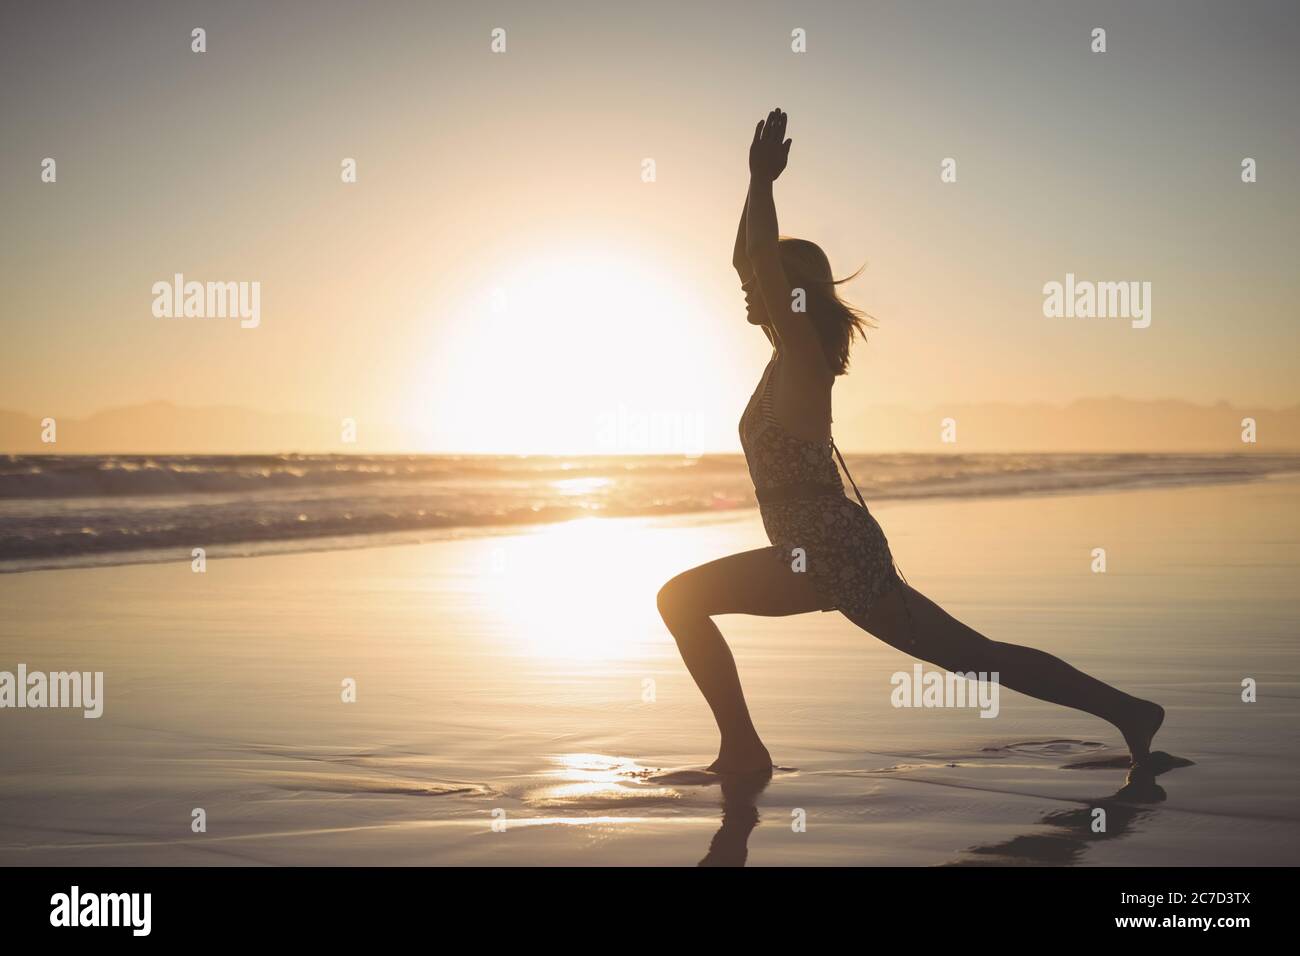 woman play yoga sun salutation with sunrise backlight on the beach Stock Photo